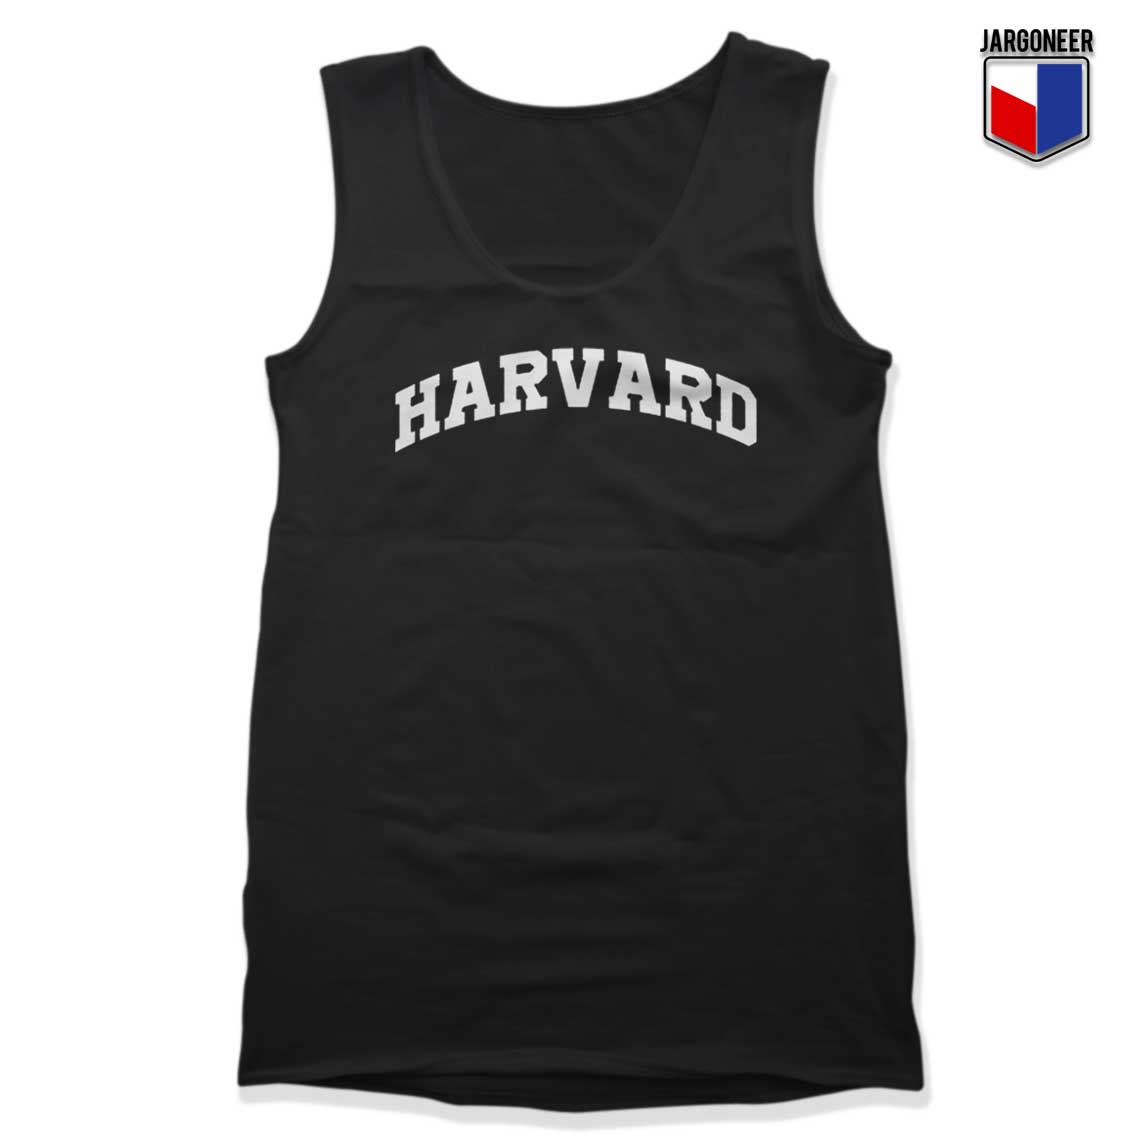 Harvard University Tank Top - Shop Unique Graphic Cool Shirt Designs